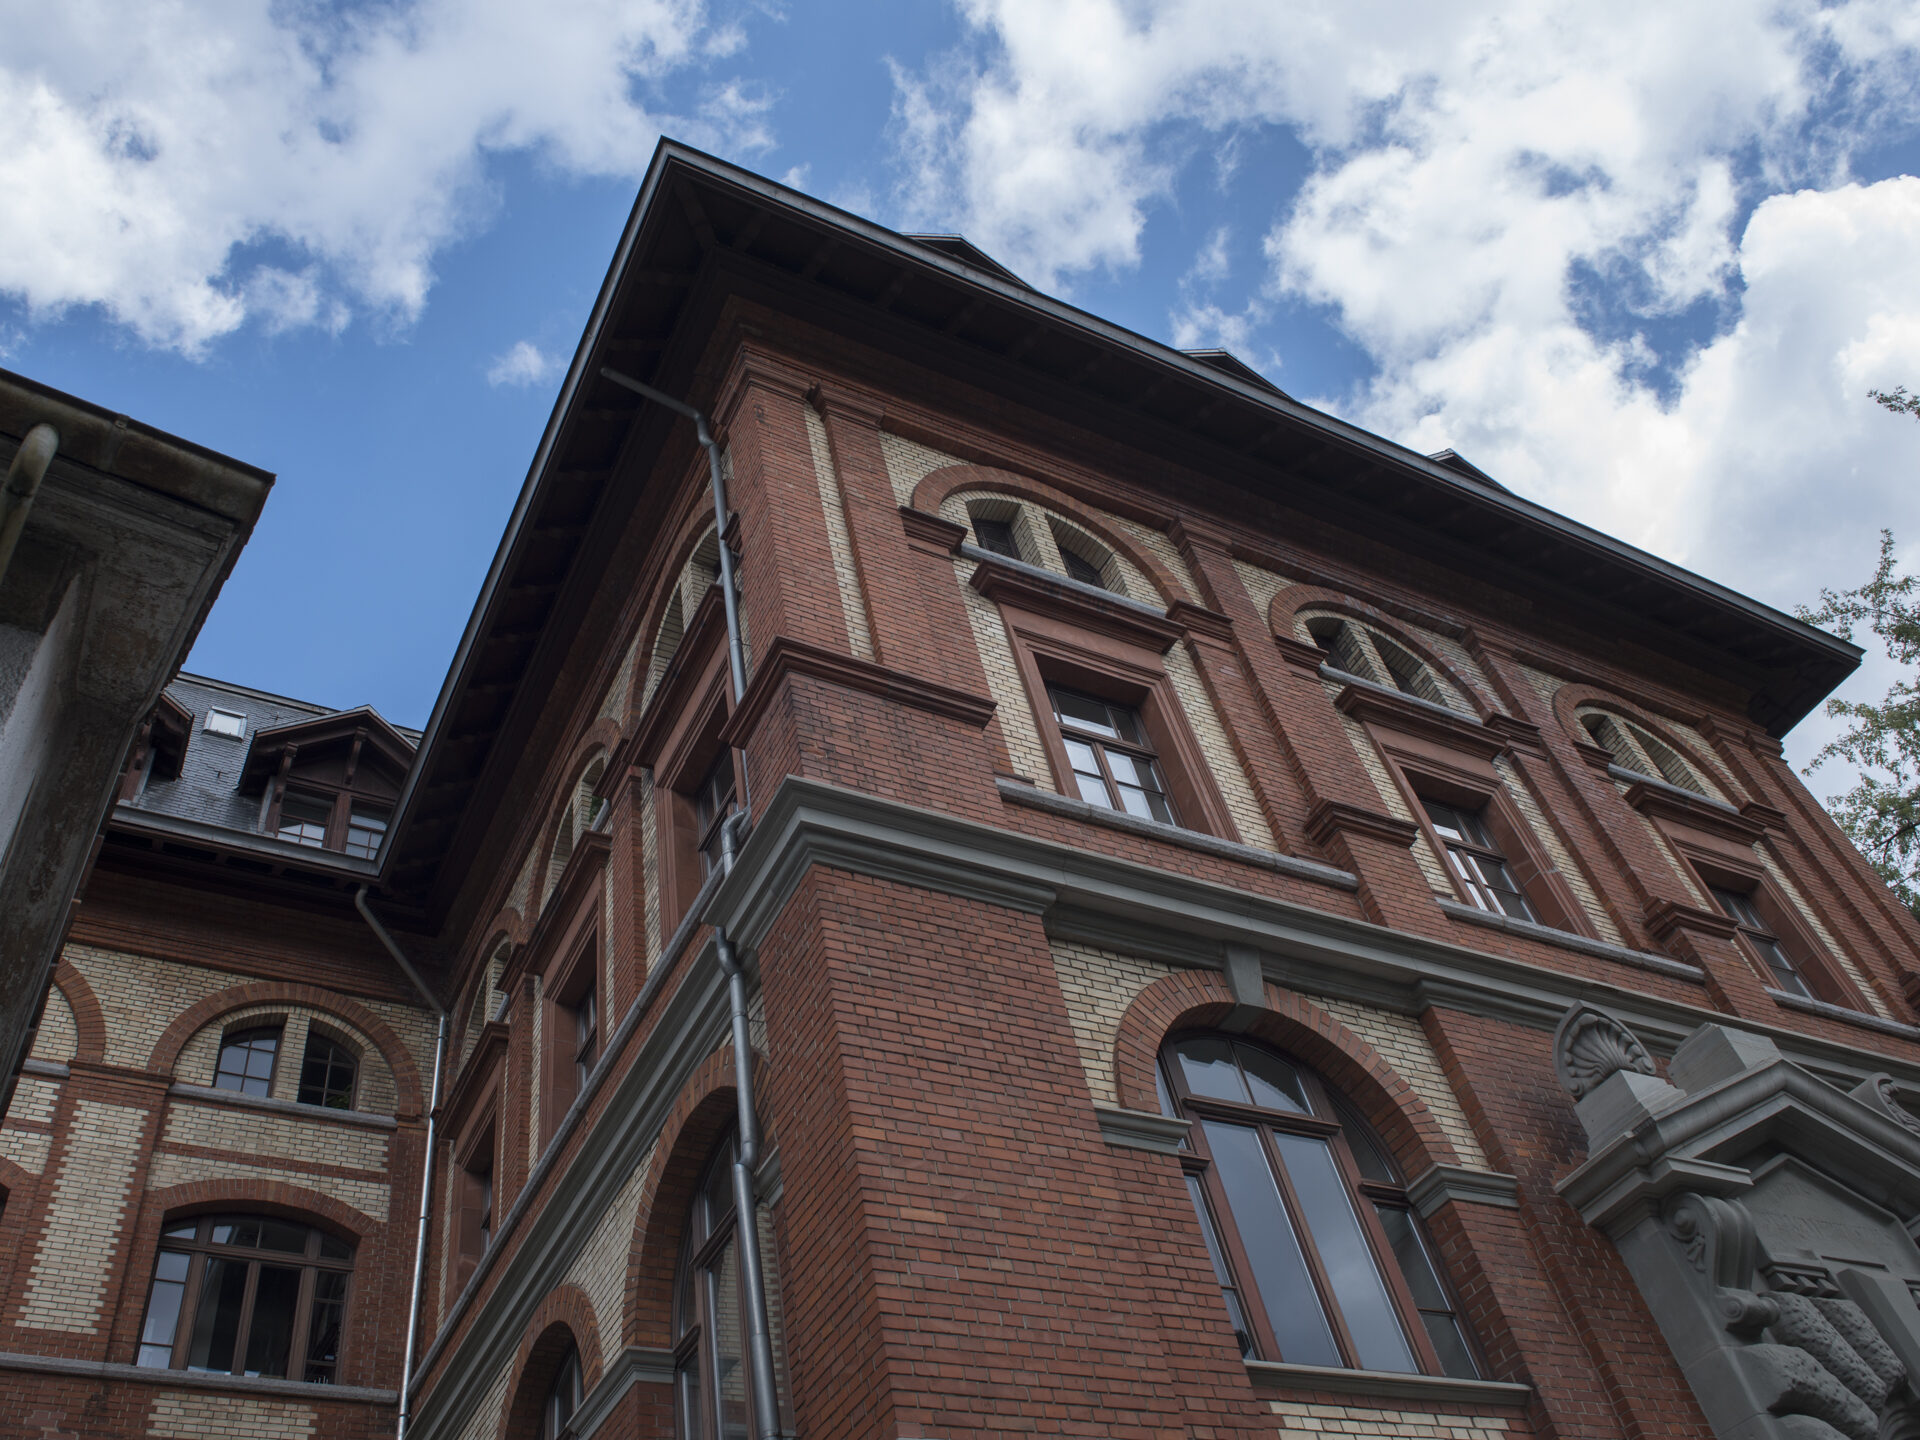 Gesellenhaus Wolfbach - 1889 wurde es eingeweiht und blieb fast 100 Jahre im Besitz des Verbands. Ab 1930 hatten hier auch die Kolping-Krankenkasse und das Verbandssekretariat ihren Sitz.